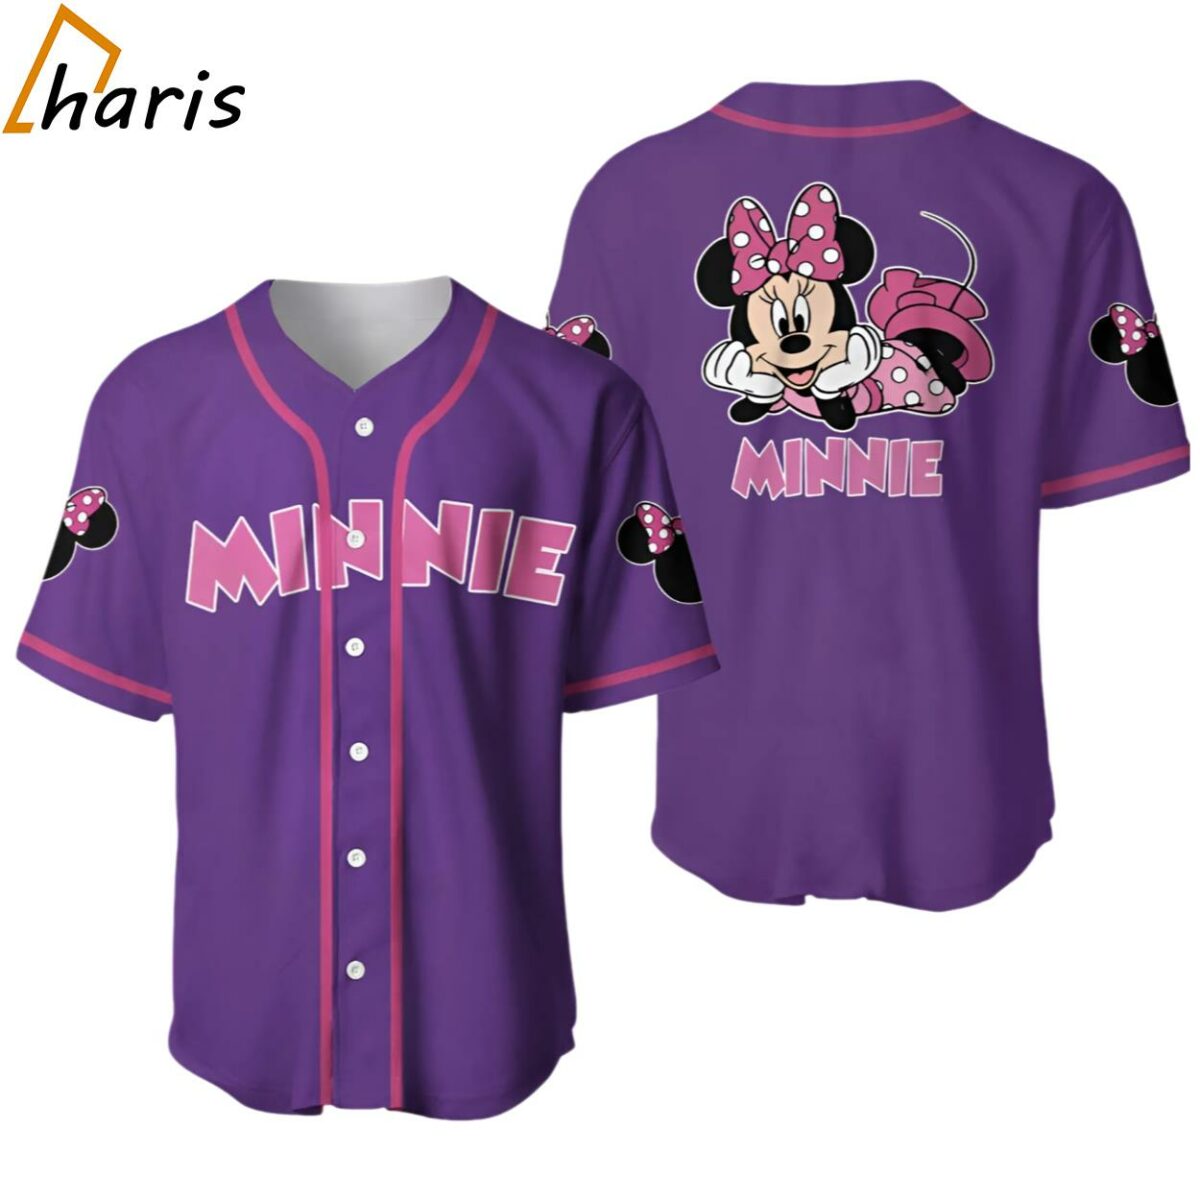 Chilling Minnie Mouse Pink Purple Disney Baseball Jersey jersey jersey